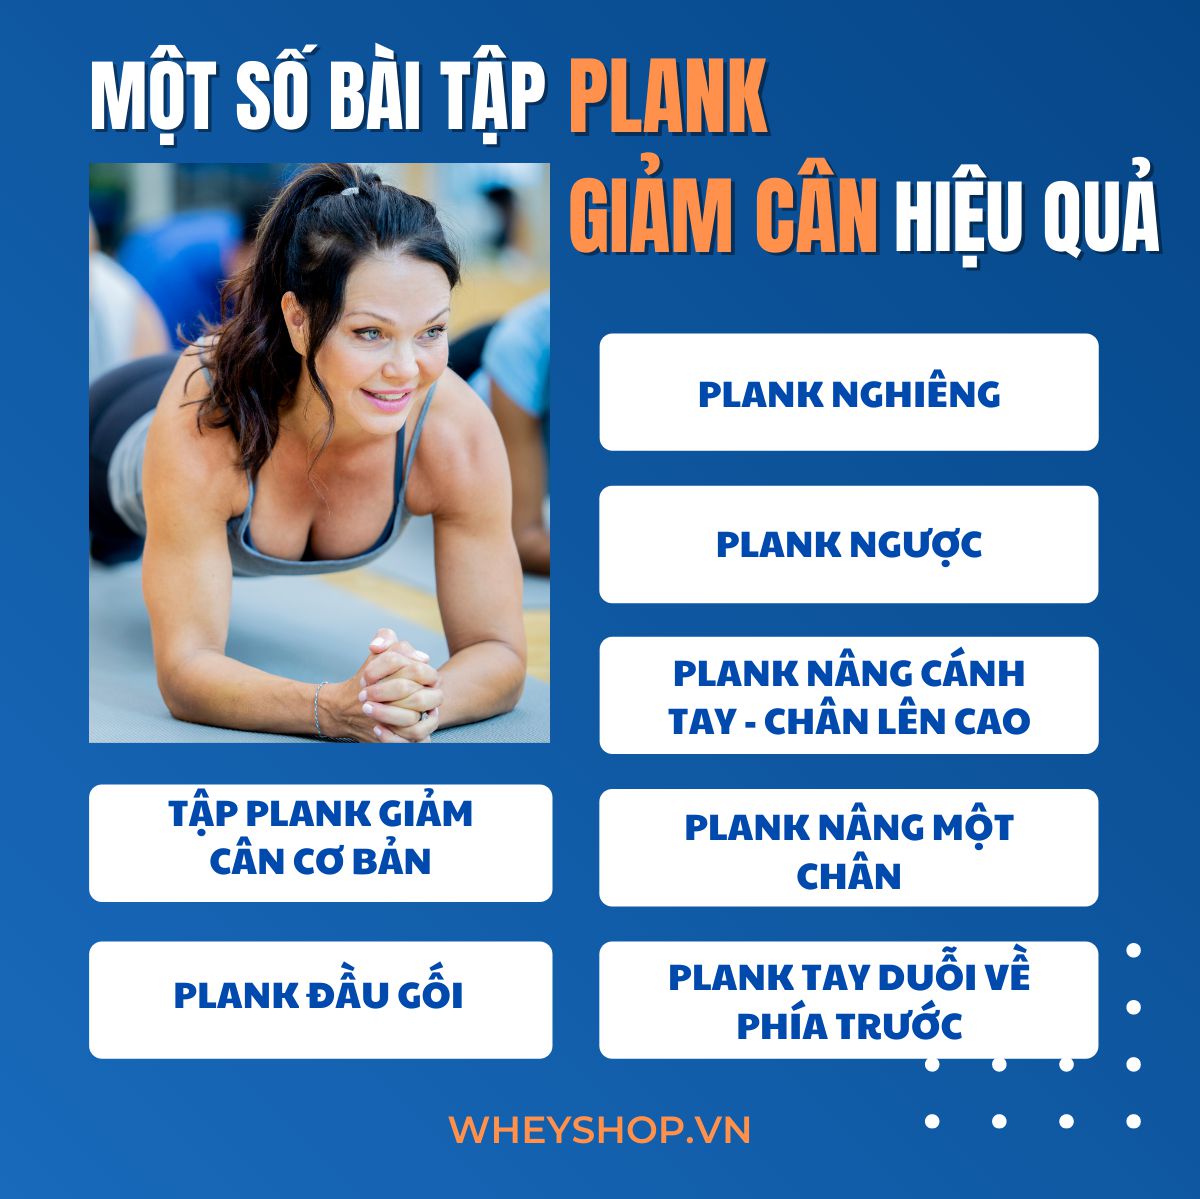 Plank được coi như thể bài bác luyện cơ phiên bản và hiệu suất cao tuy nhiên ngẫu nhiên người nào là luyện thể hình cũng cần được biết. Tuy nhiên, làm thế nào nhằm luyện Plank tách cân nặng toàn thân thiện thì lại...